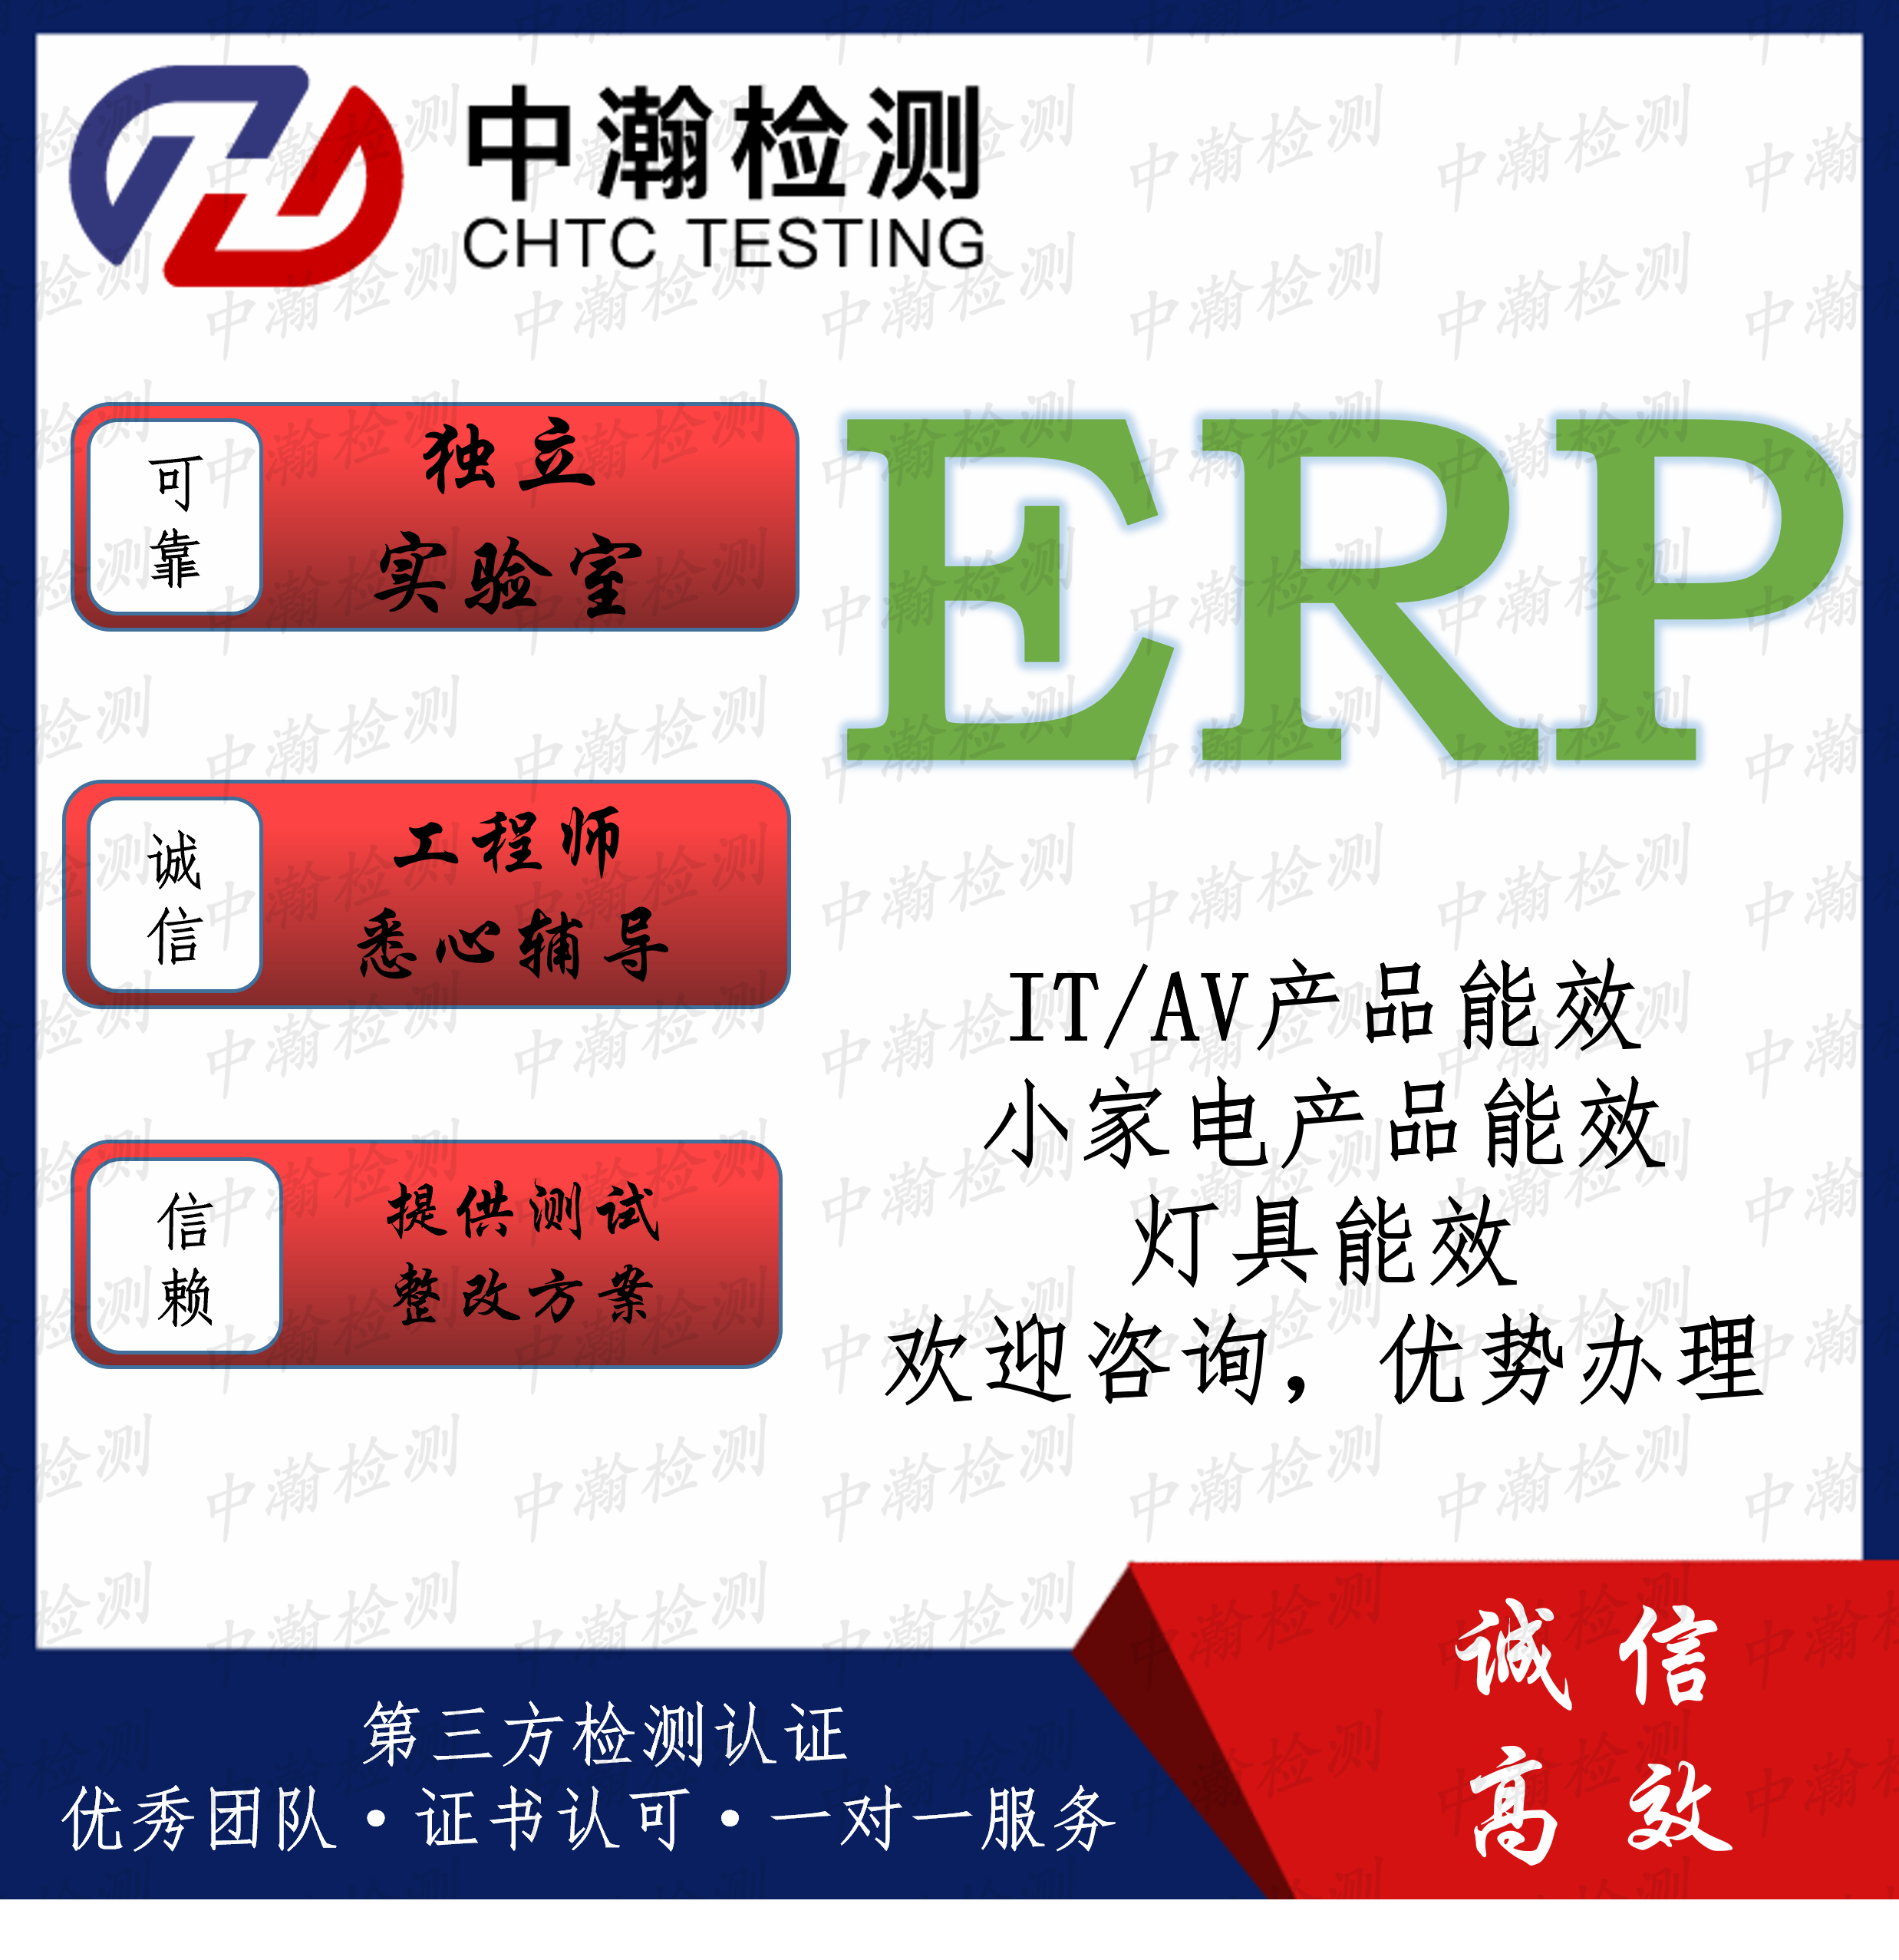 干手机做ERP能效测试内容 欧盟ERP认证流程 免费咨询